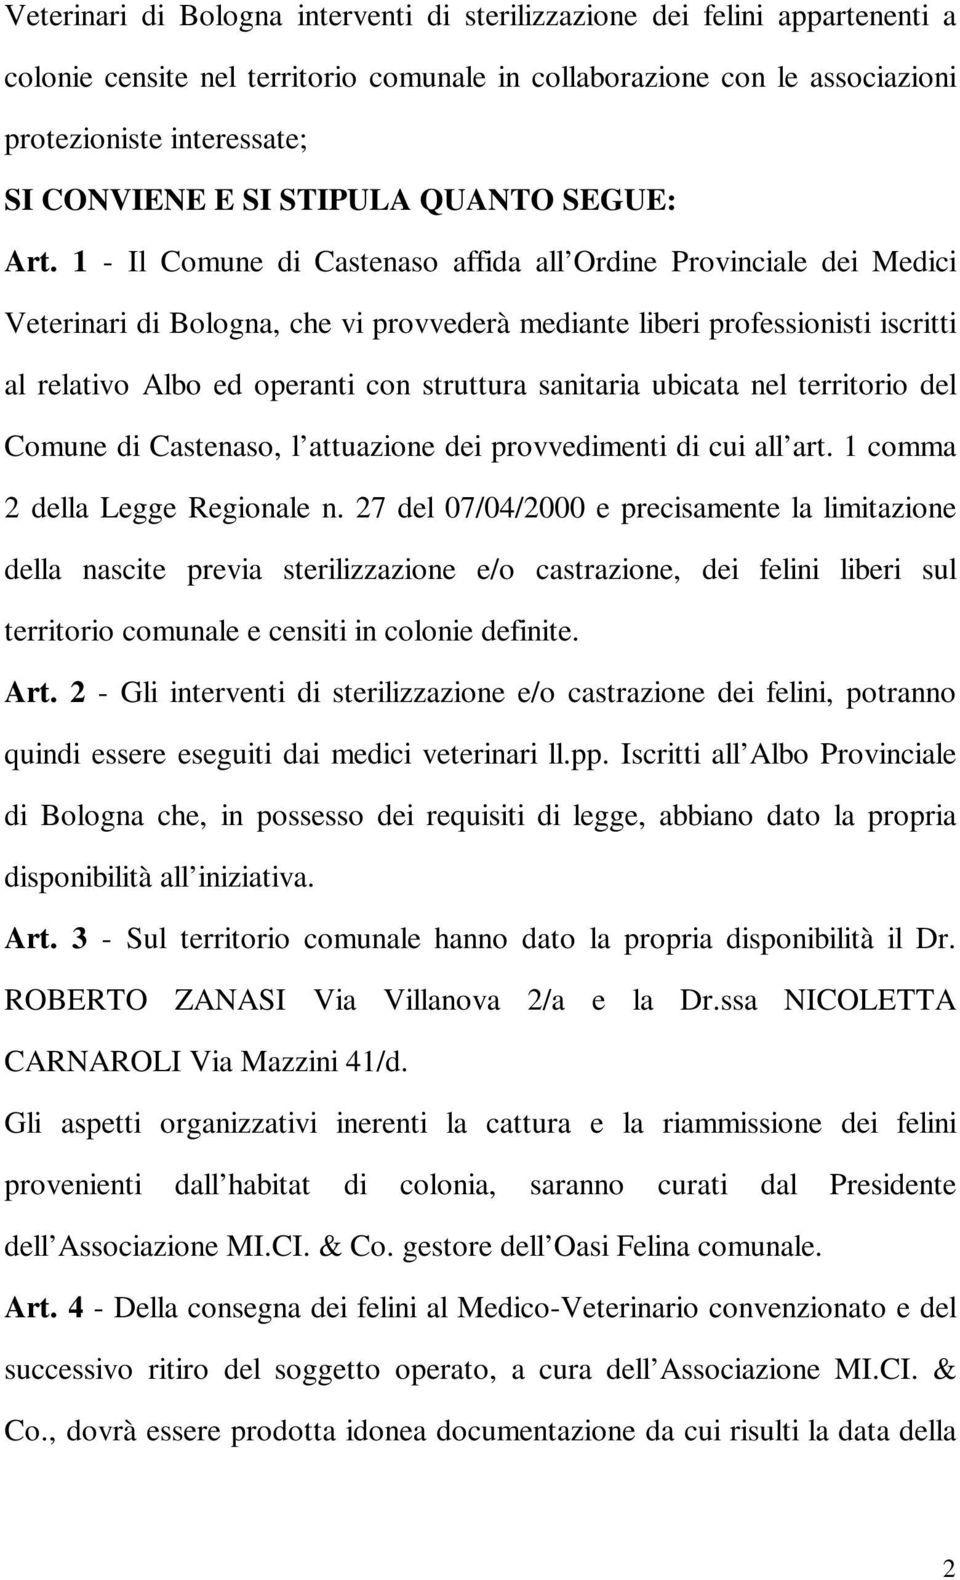 1 Il Comune di Castenaso affida all Ordine Provinciale dei Medici Veterinari di Bologna, che vi provvederà mediante liberi professionisti iscritti al relativo Albo ed operanti con struttura sanitaria